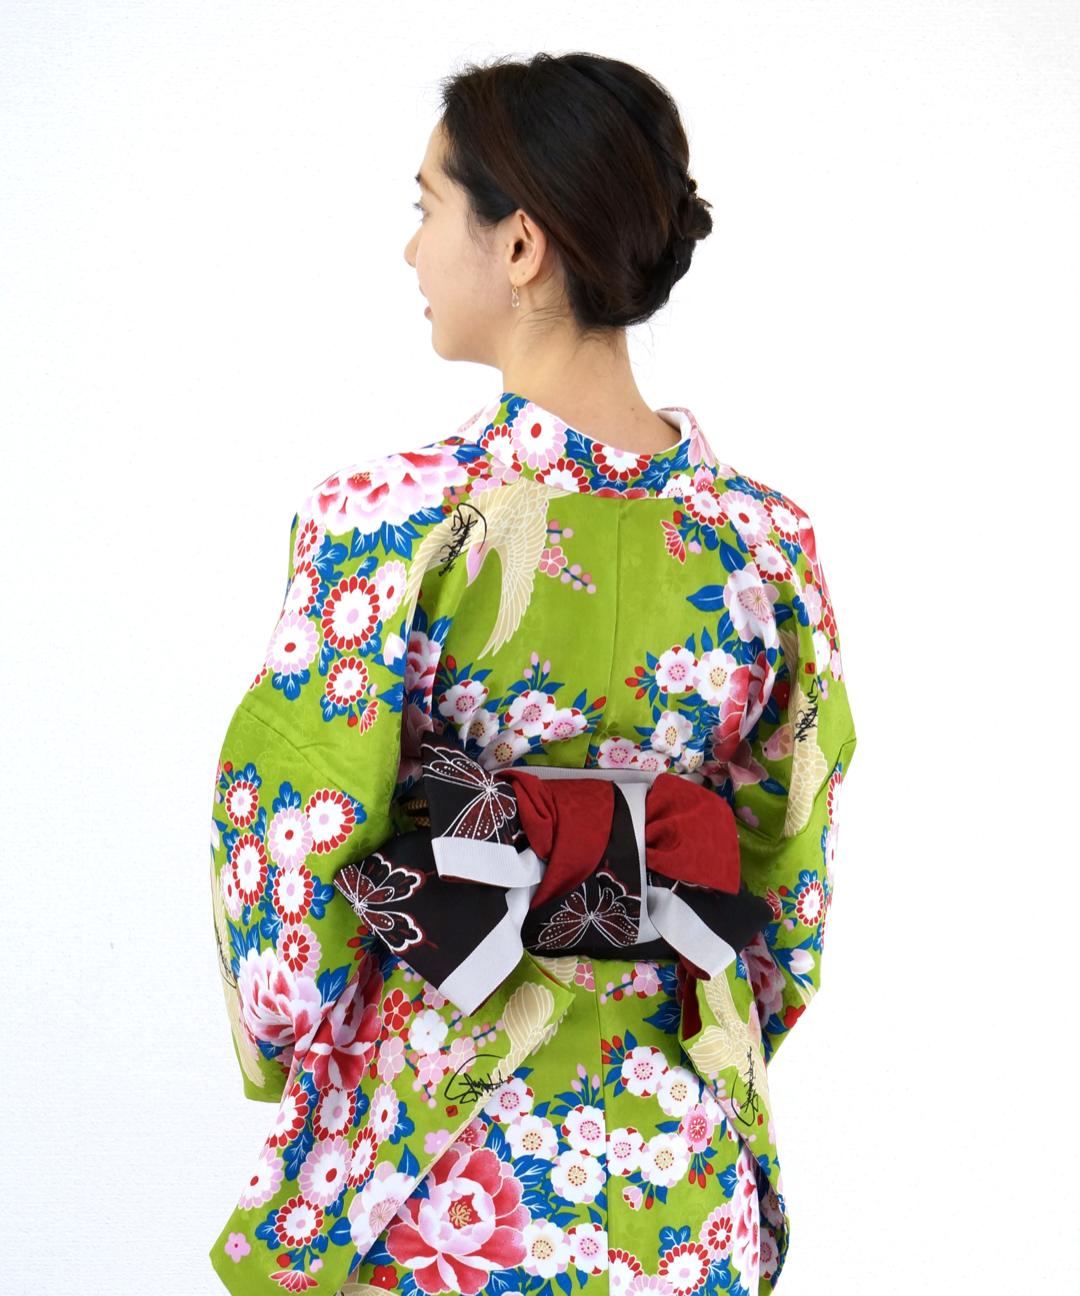 衿つき着物(リボン帯付き) [花らんまん 黄緑] ※着物単品 ¥12,000画像